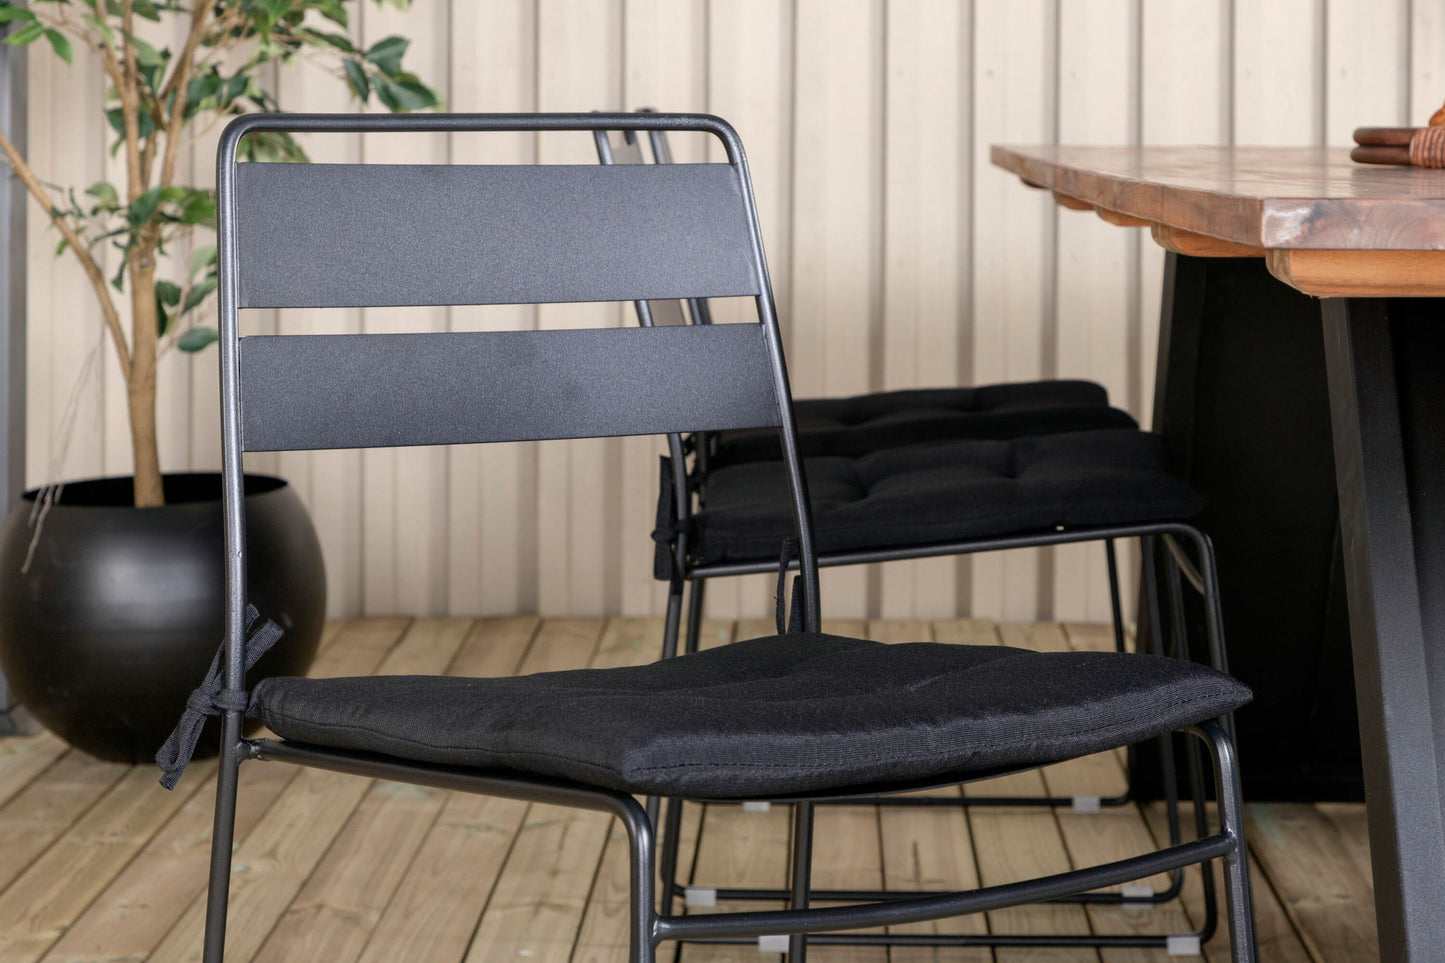 Doory - Spisebord, sort stål / akacie top i teak look - 250*100cm+Lia Spisebordsstol - Sort